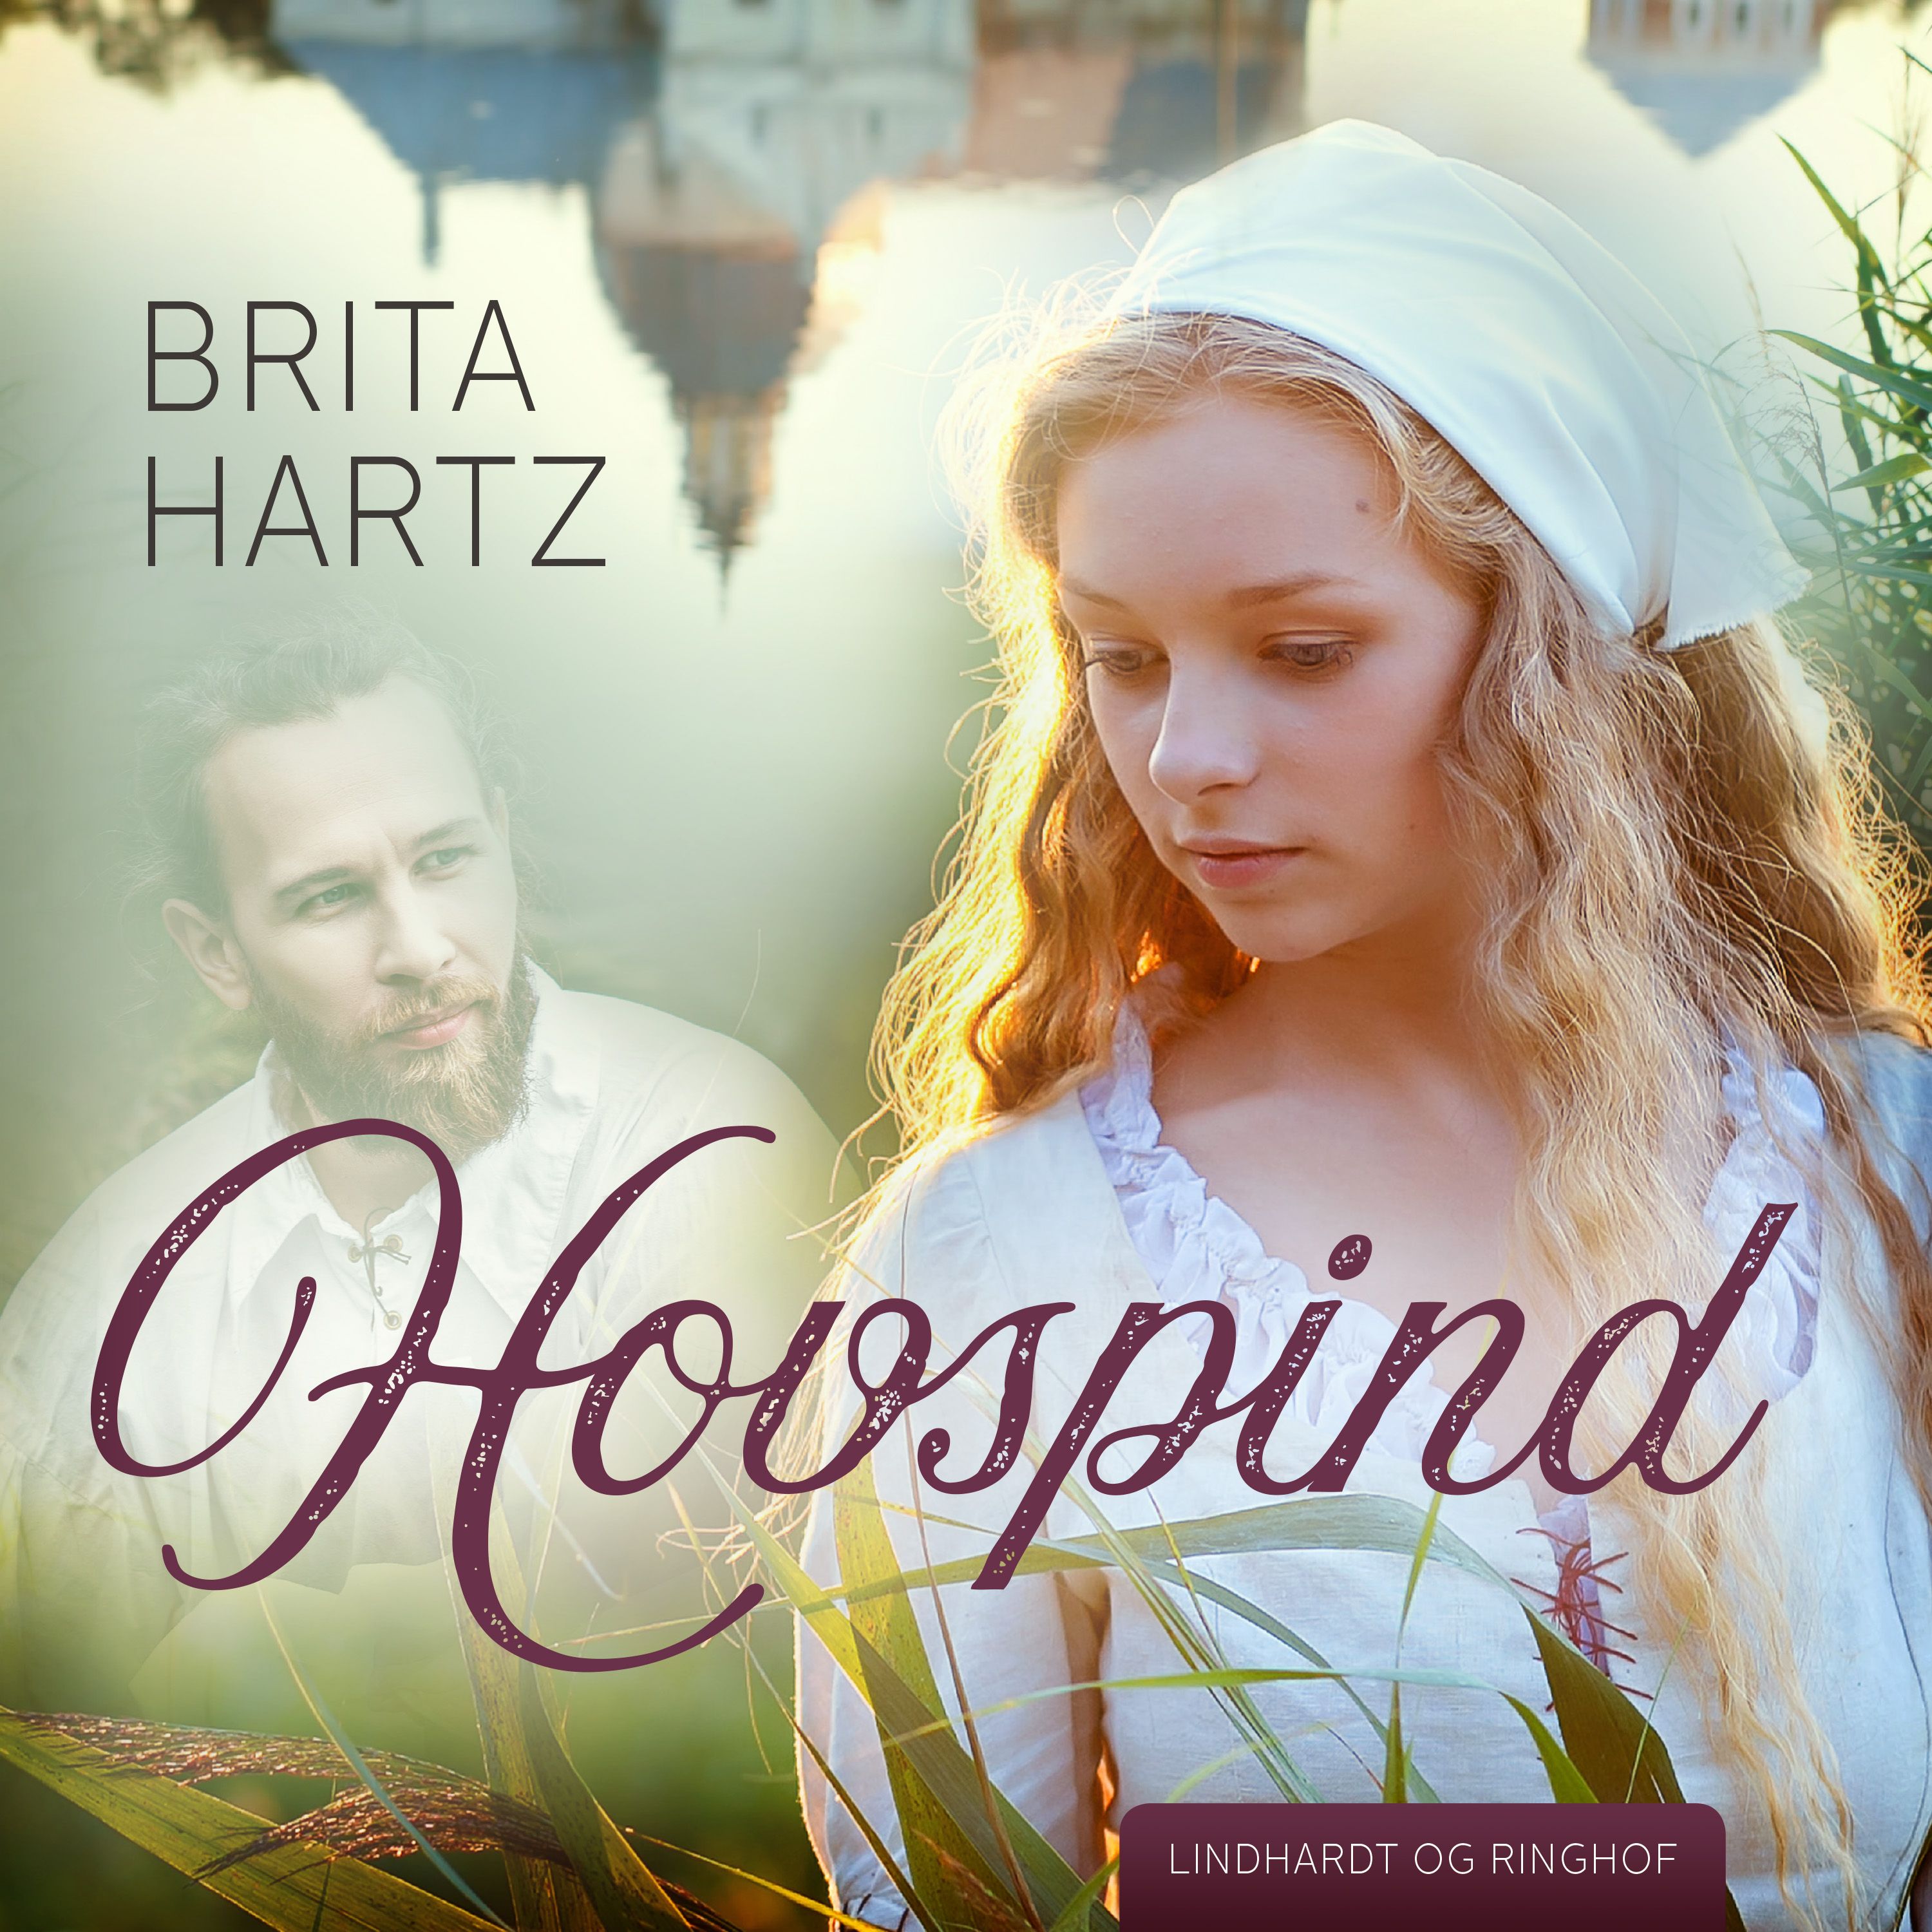 Hovspind, lydbog af Brita Hartz